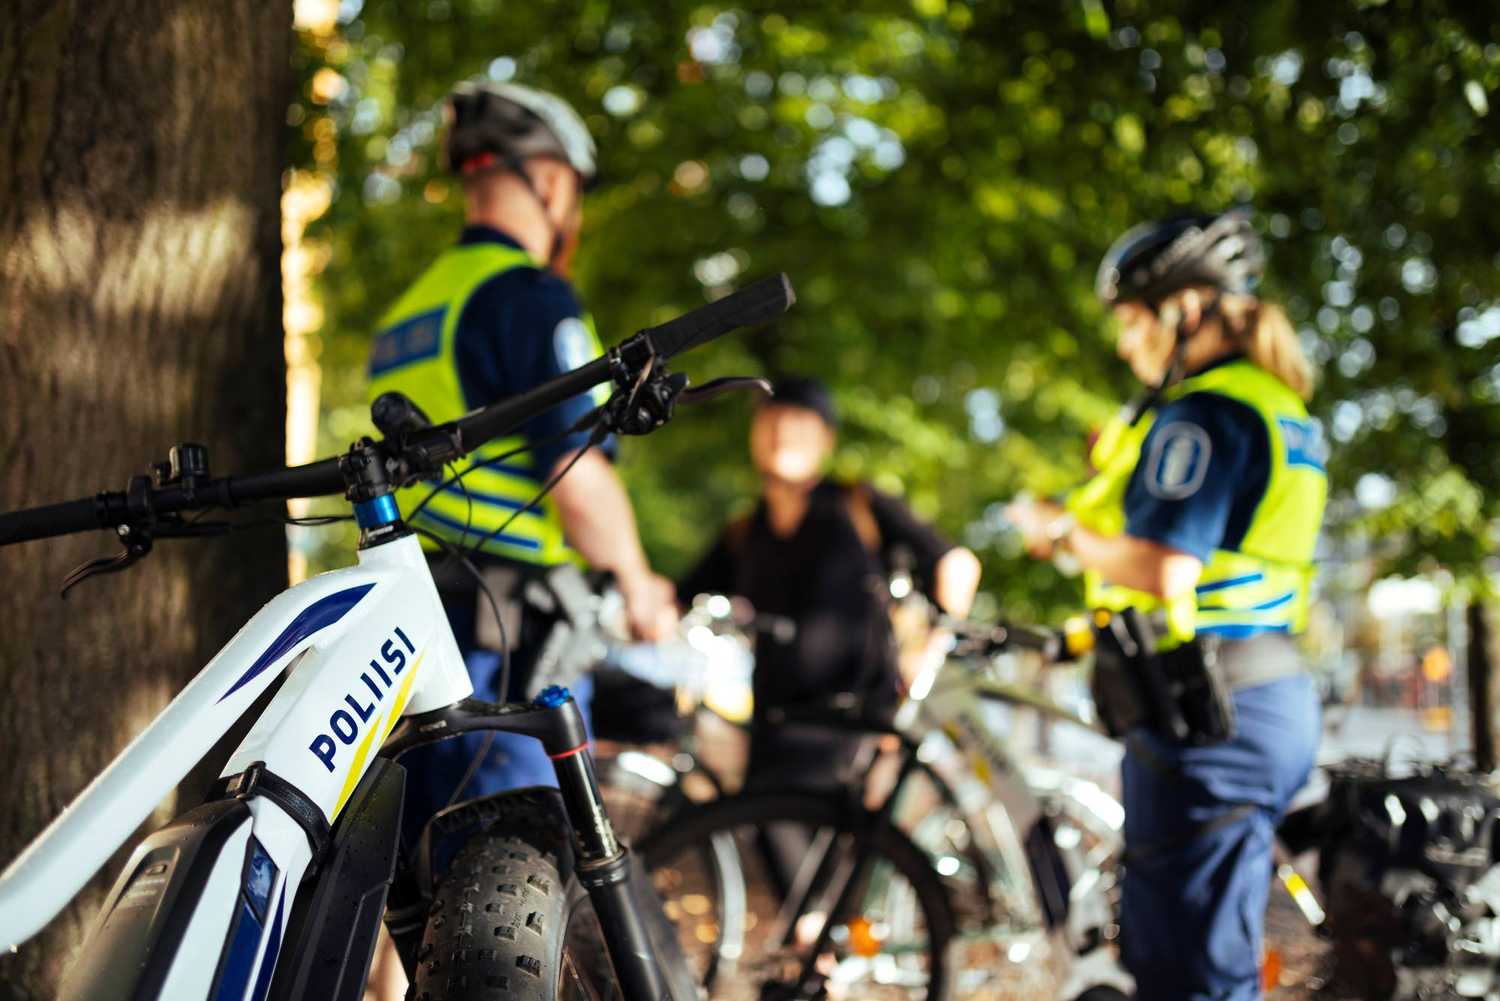 Cykelpoliser pratar med kunden. Poliscykel i förgrunden.ä.